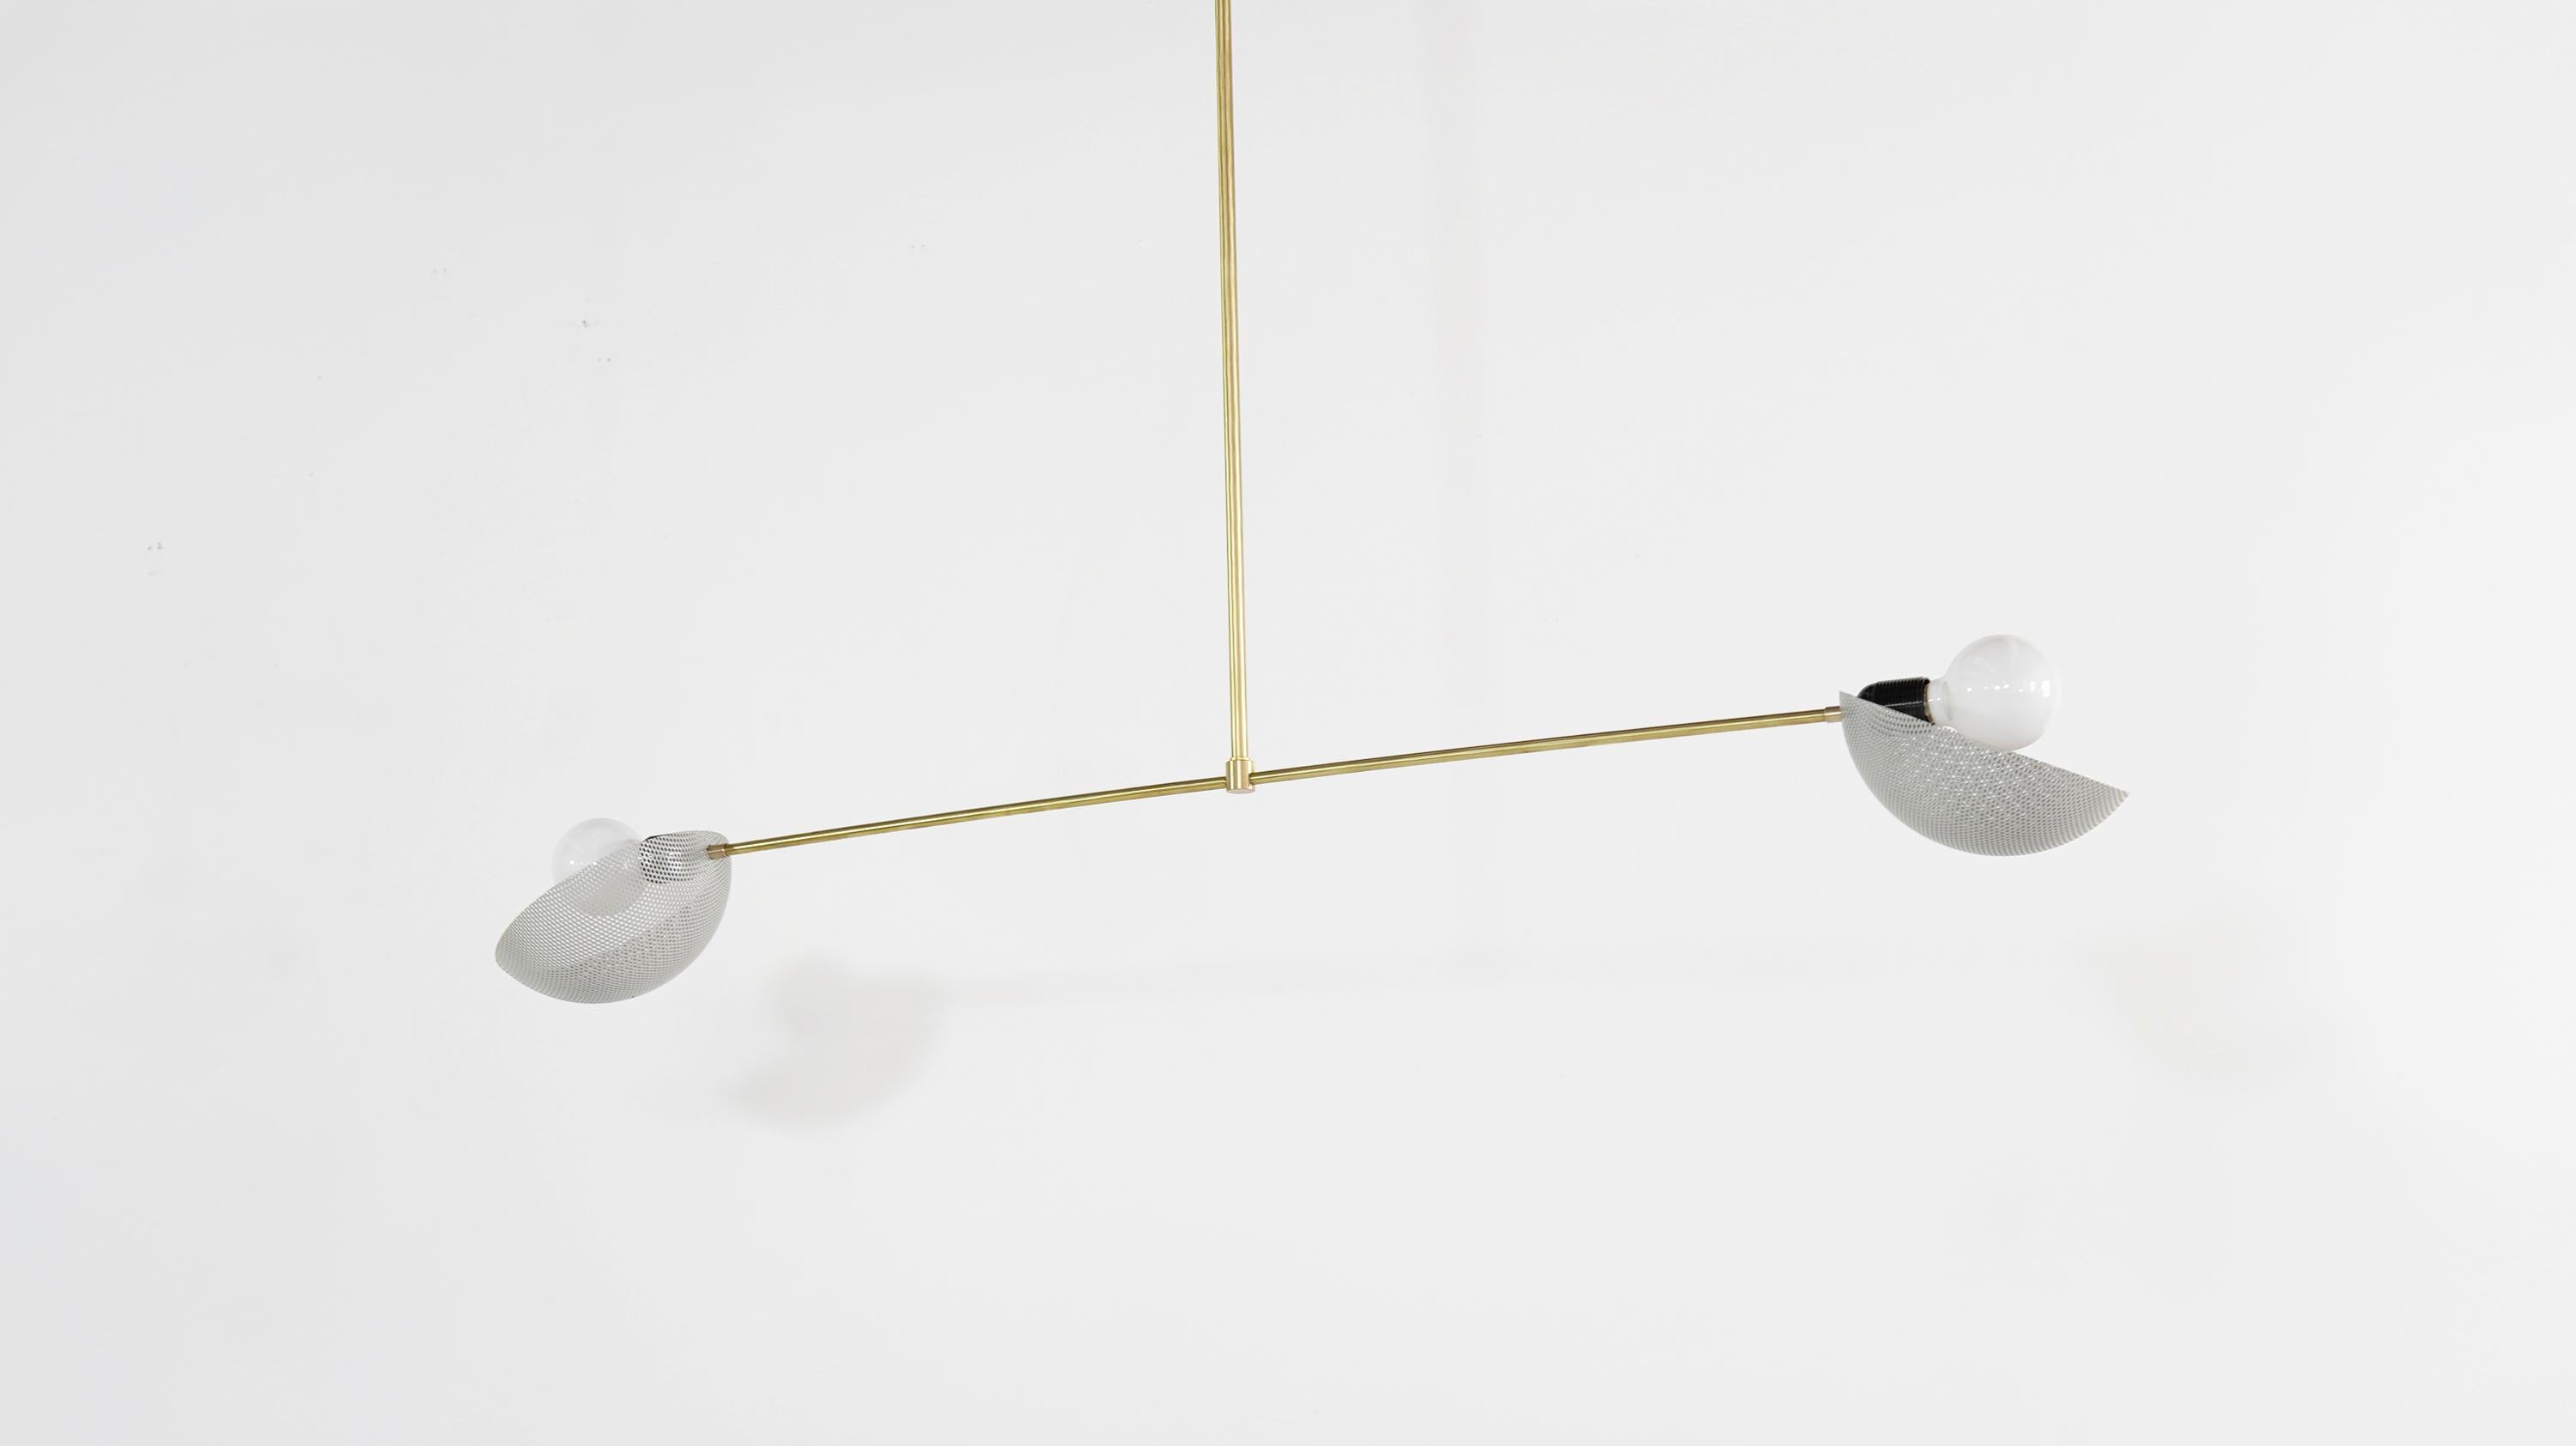 La suspension Axial est un plafonnier au design moderne et fort, défini par l'équilibre et la balance. Axial présente deux abat-jour en forme de bol fabriqués à partir d'une maille de métal filé, inclinés selon un angle qui imite l'inclinaison